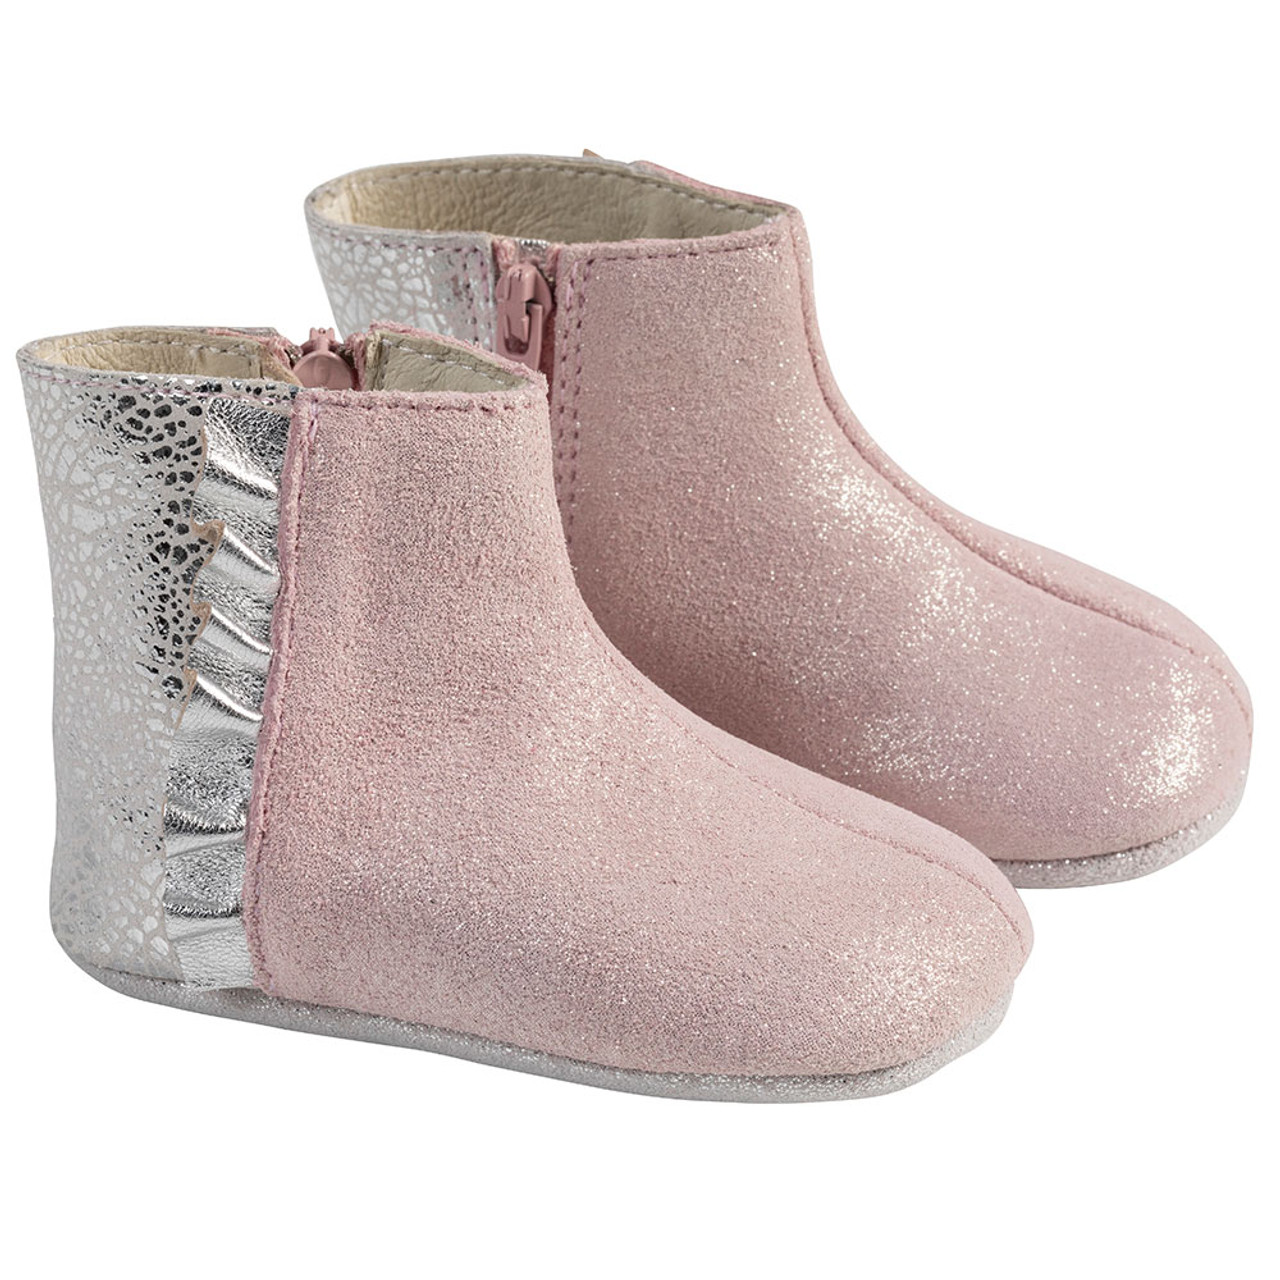 robeez pink boots